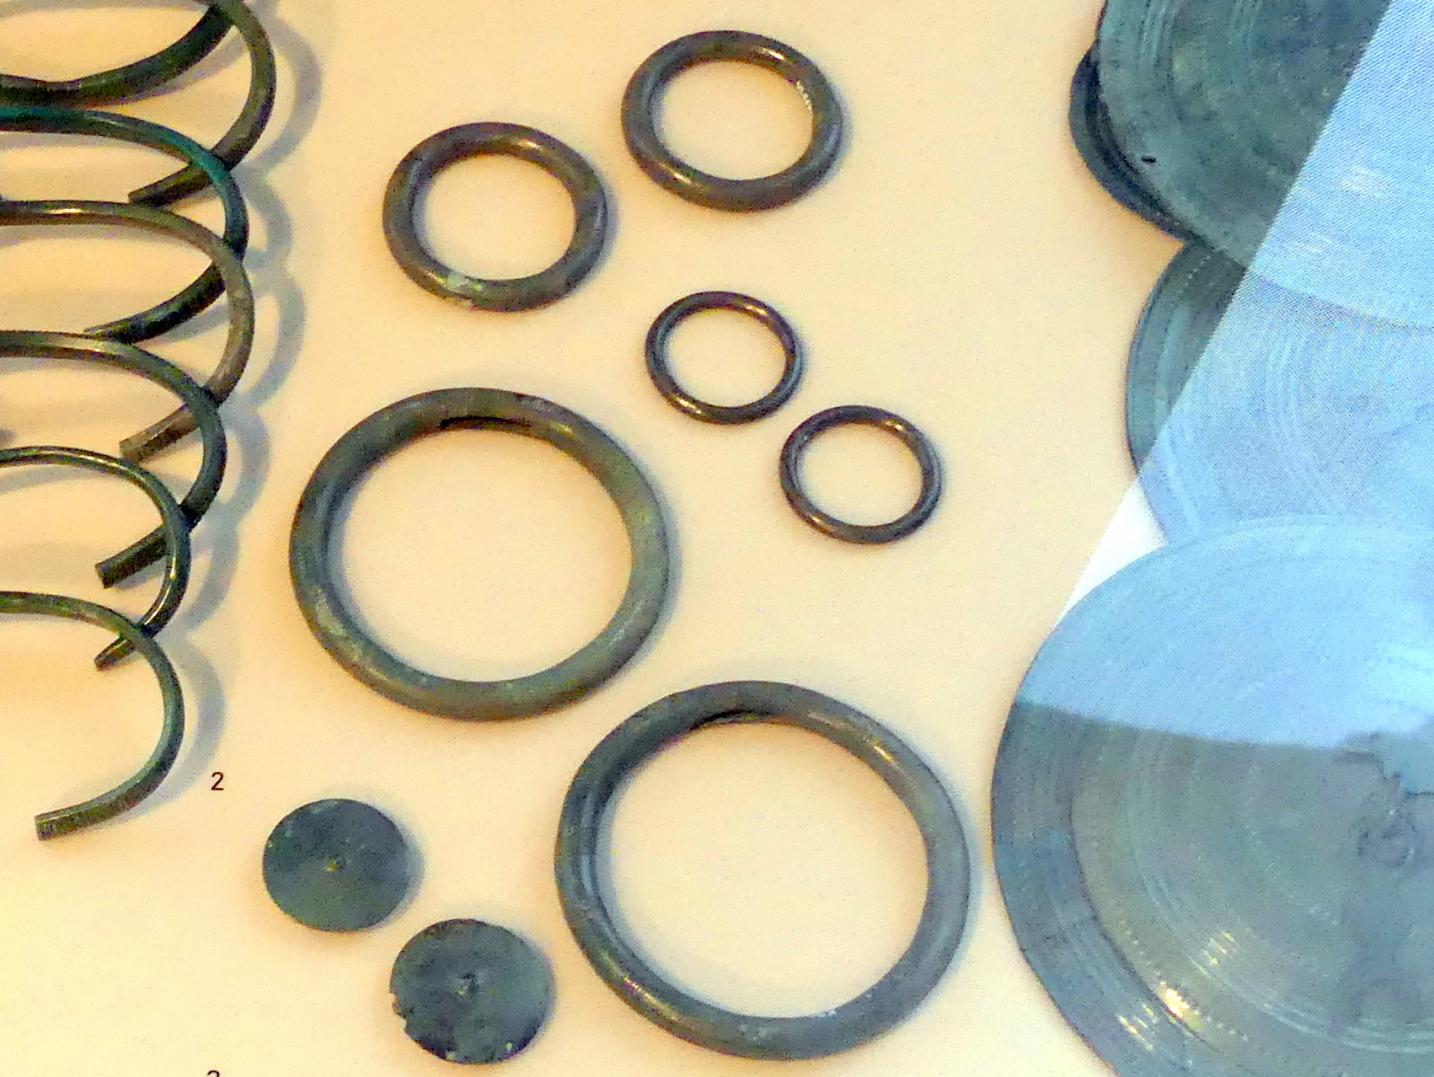 Ringverteiler, Urnenfelderzeit, 1400 - 700 v. Chr., 1000 - 700 v. Chr.